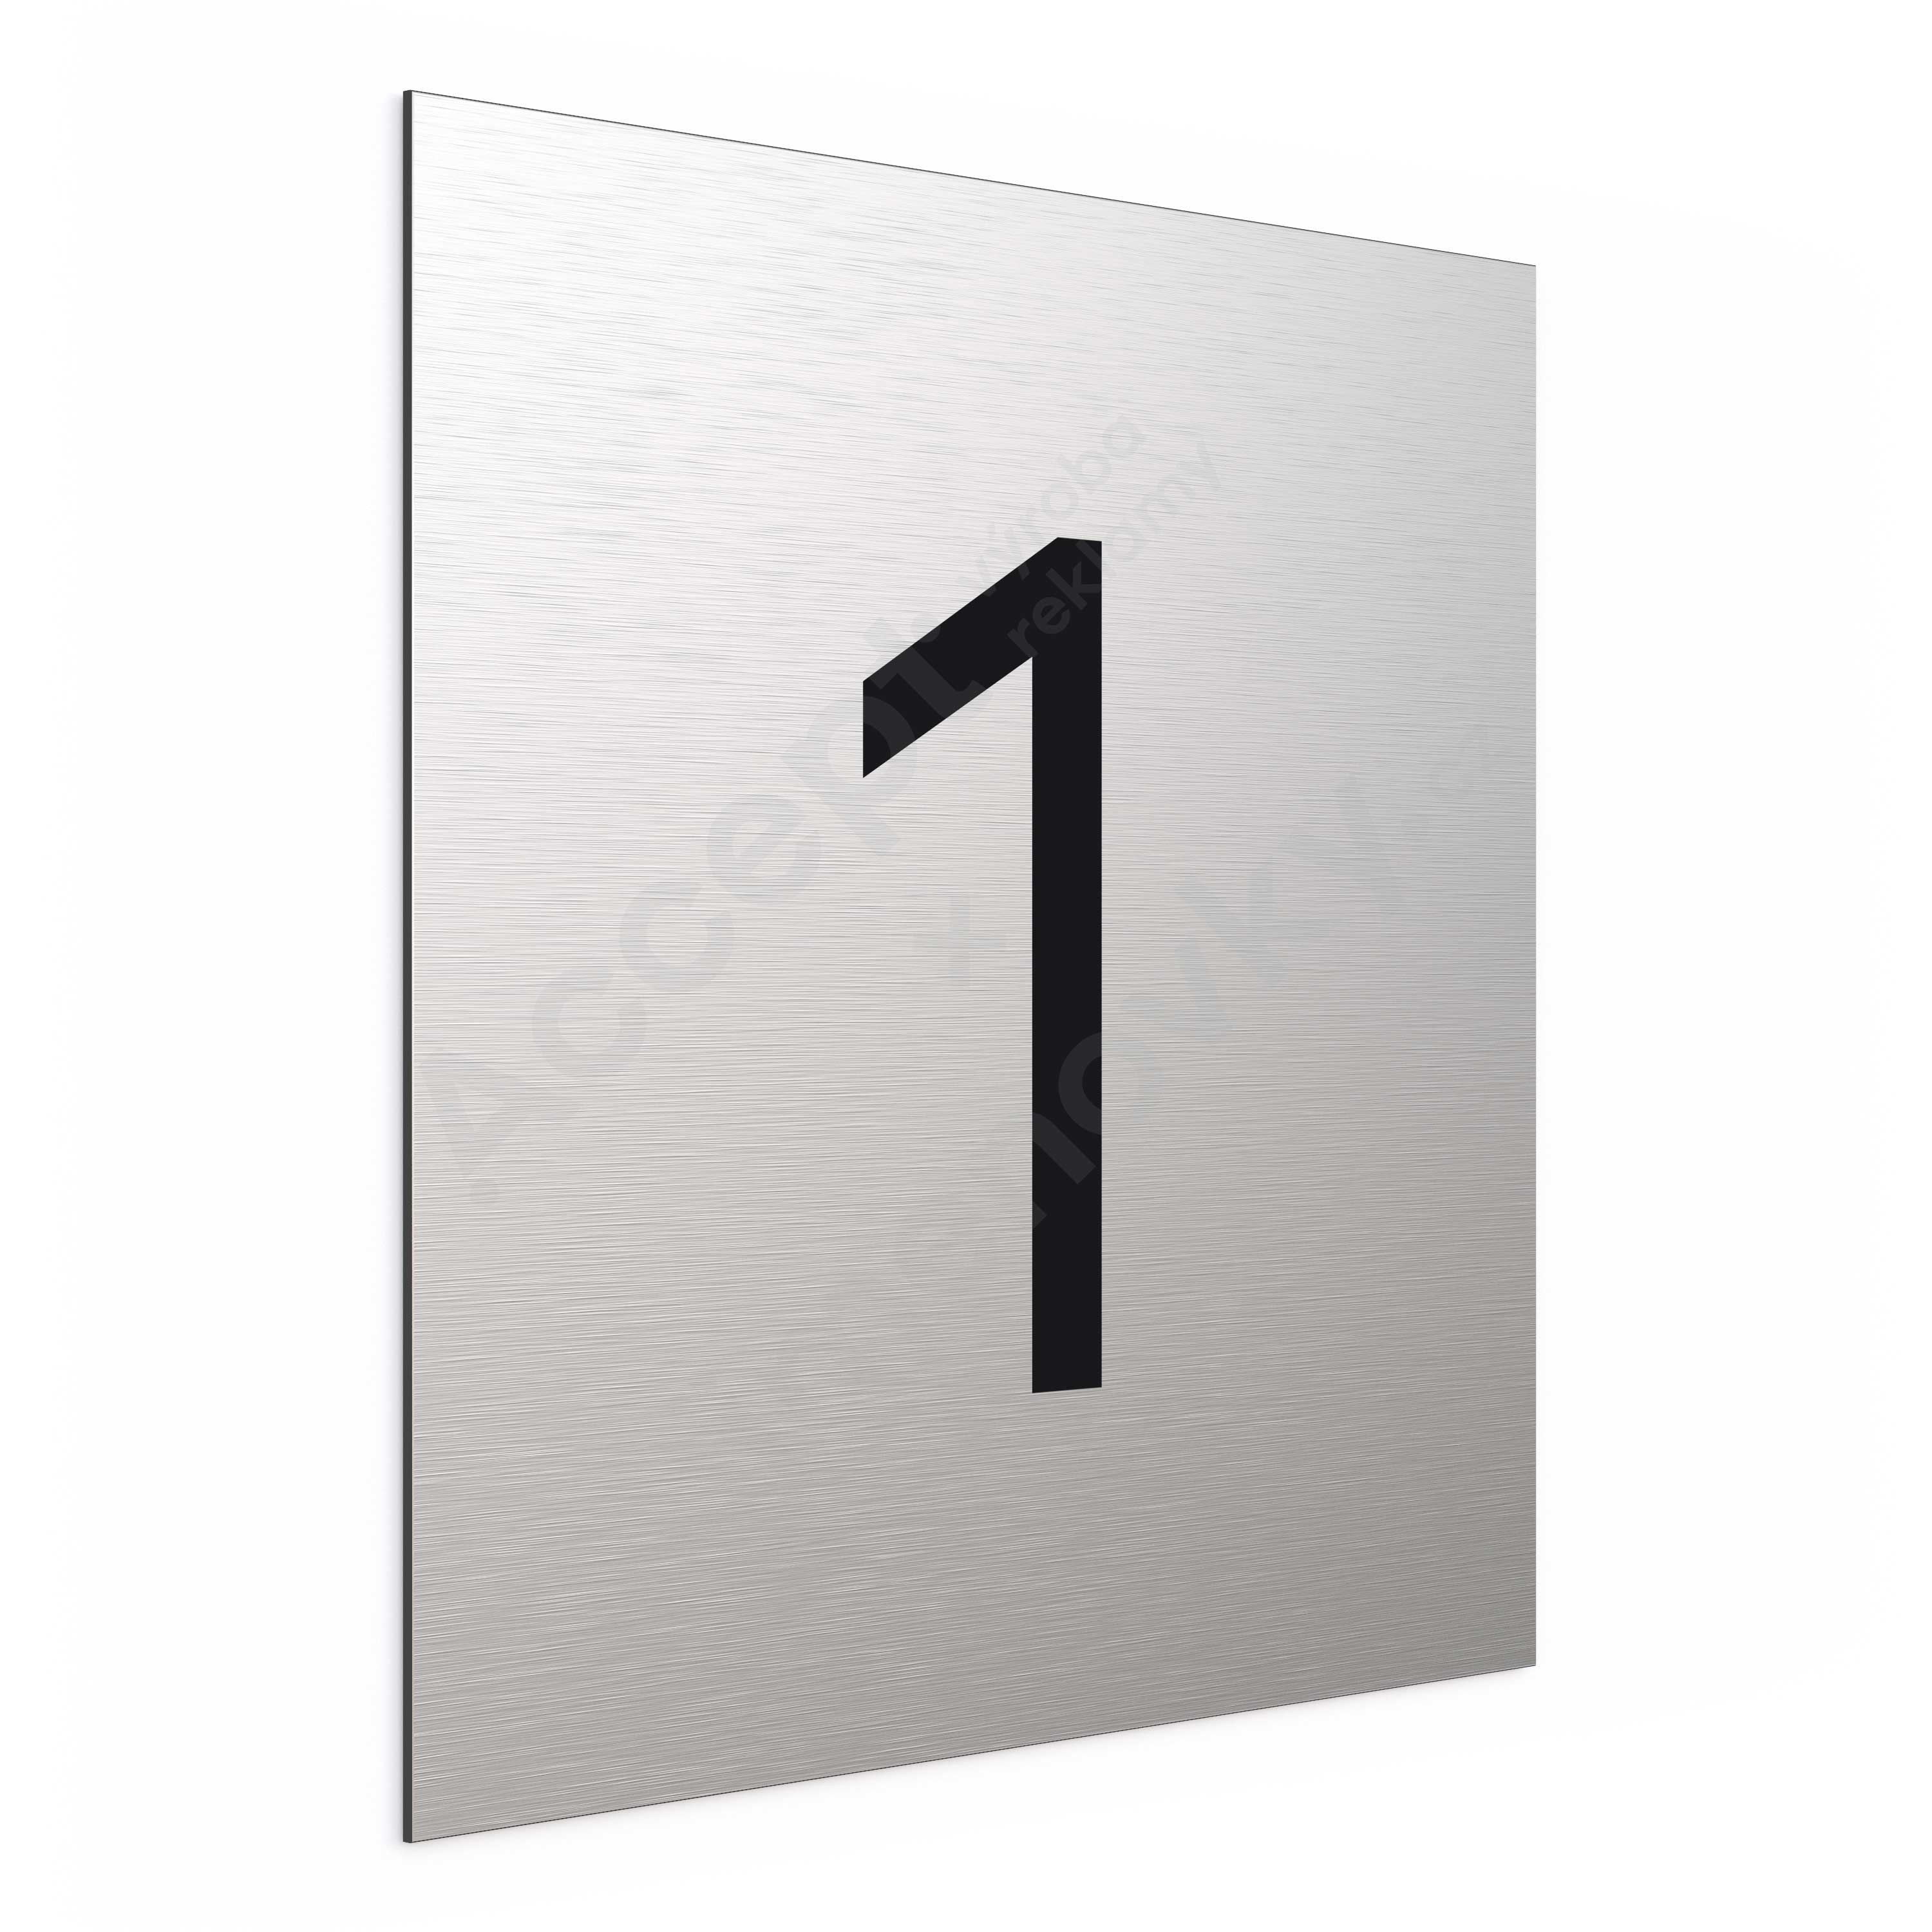 ACCEPT Označení podlaží - číslo "1" (300 x 300 mm) - stříbrná tabulka - černý popis